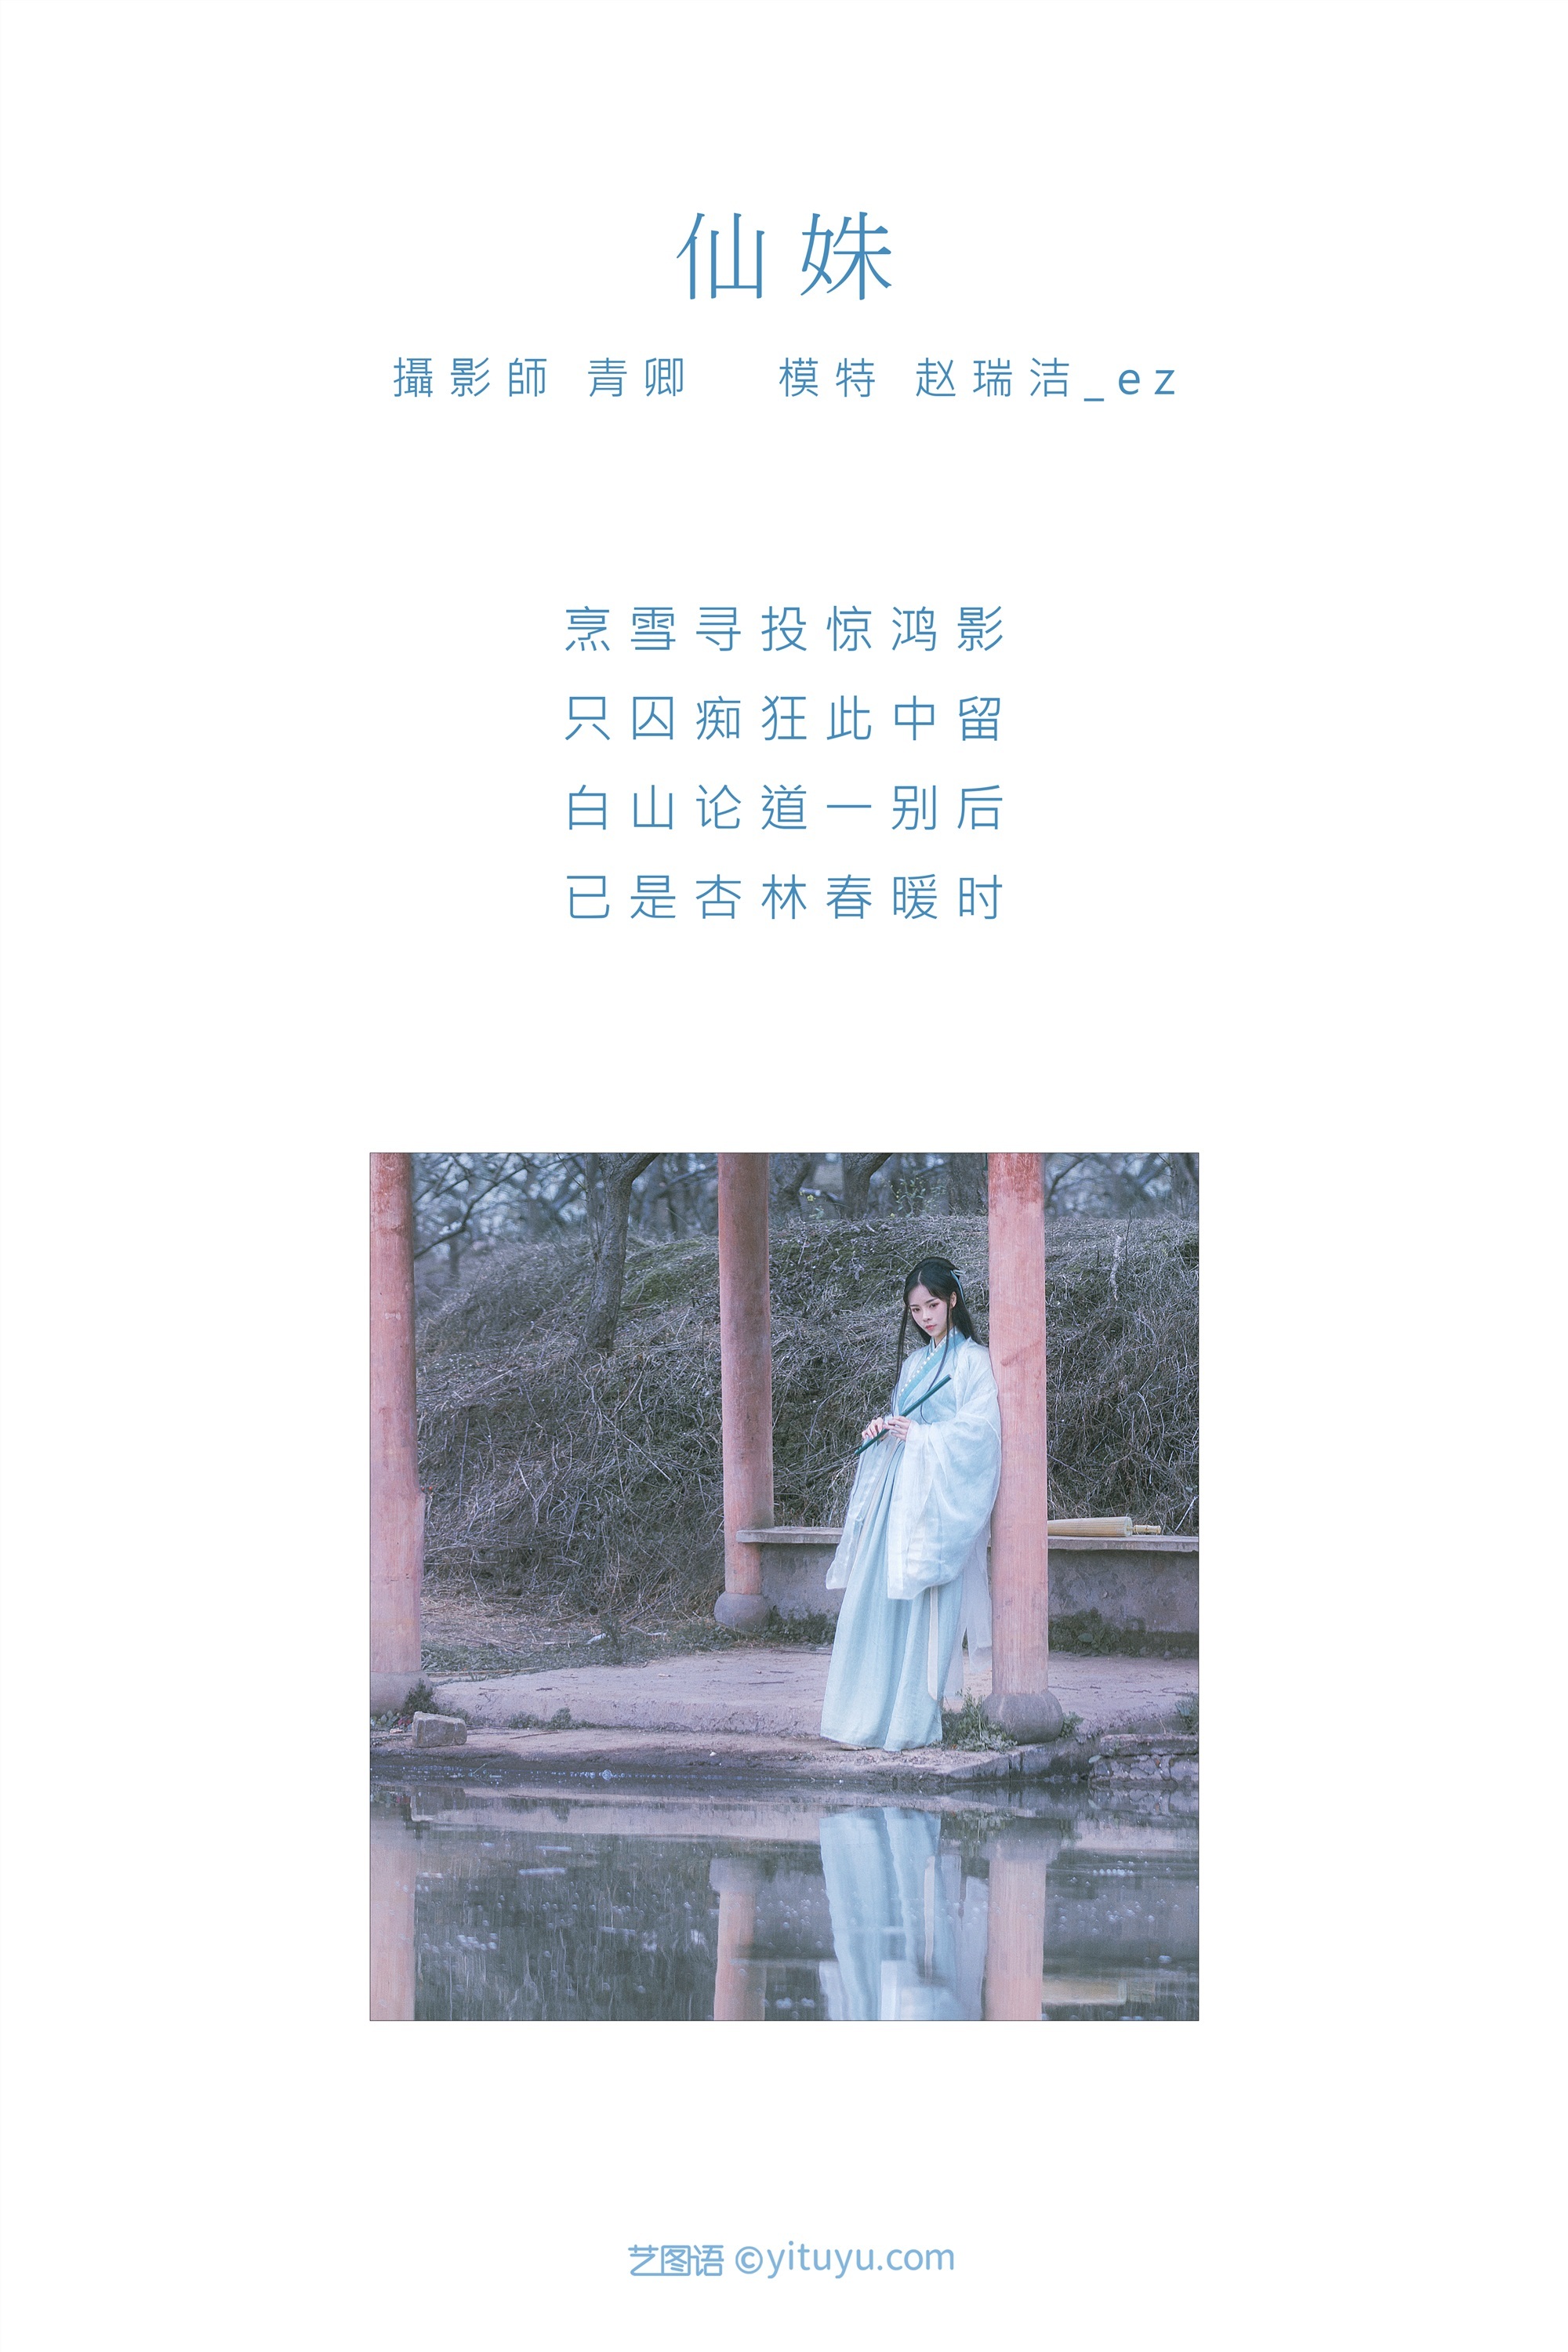 YITUYU Art Picture Language 2021.09.07 Xian Shu Zhao Ruijie ez